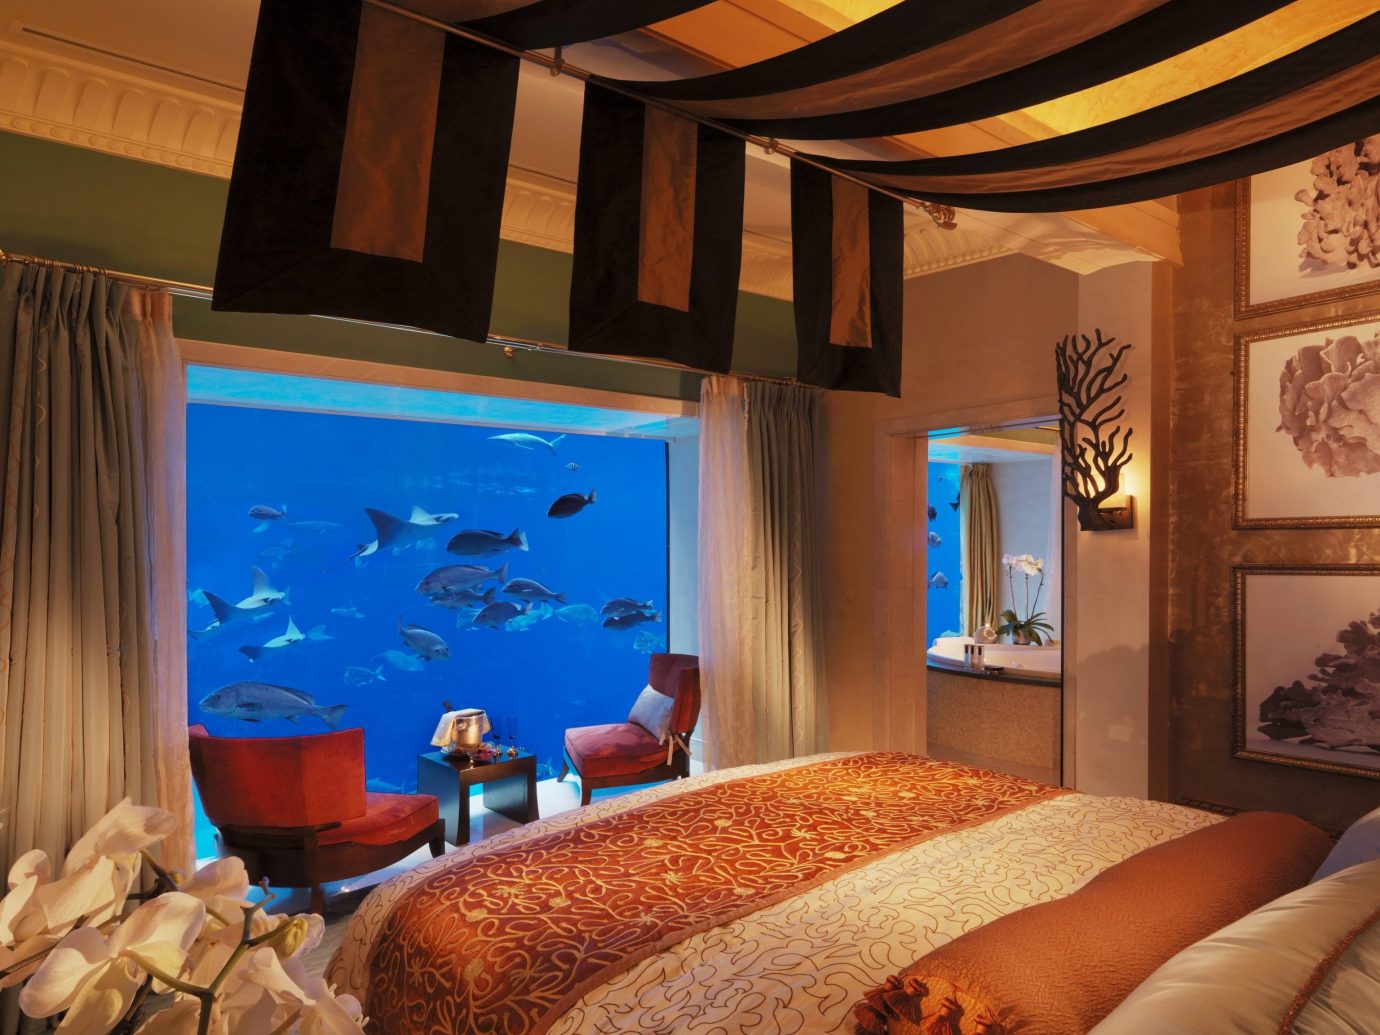 Dubai Hotels Luxury Travel Middle East indoor room property estate Suite interior design living room Resort Bedroom cottage